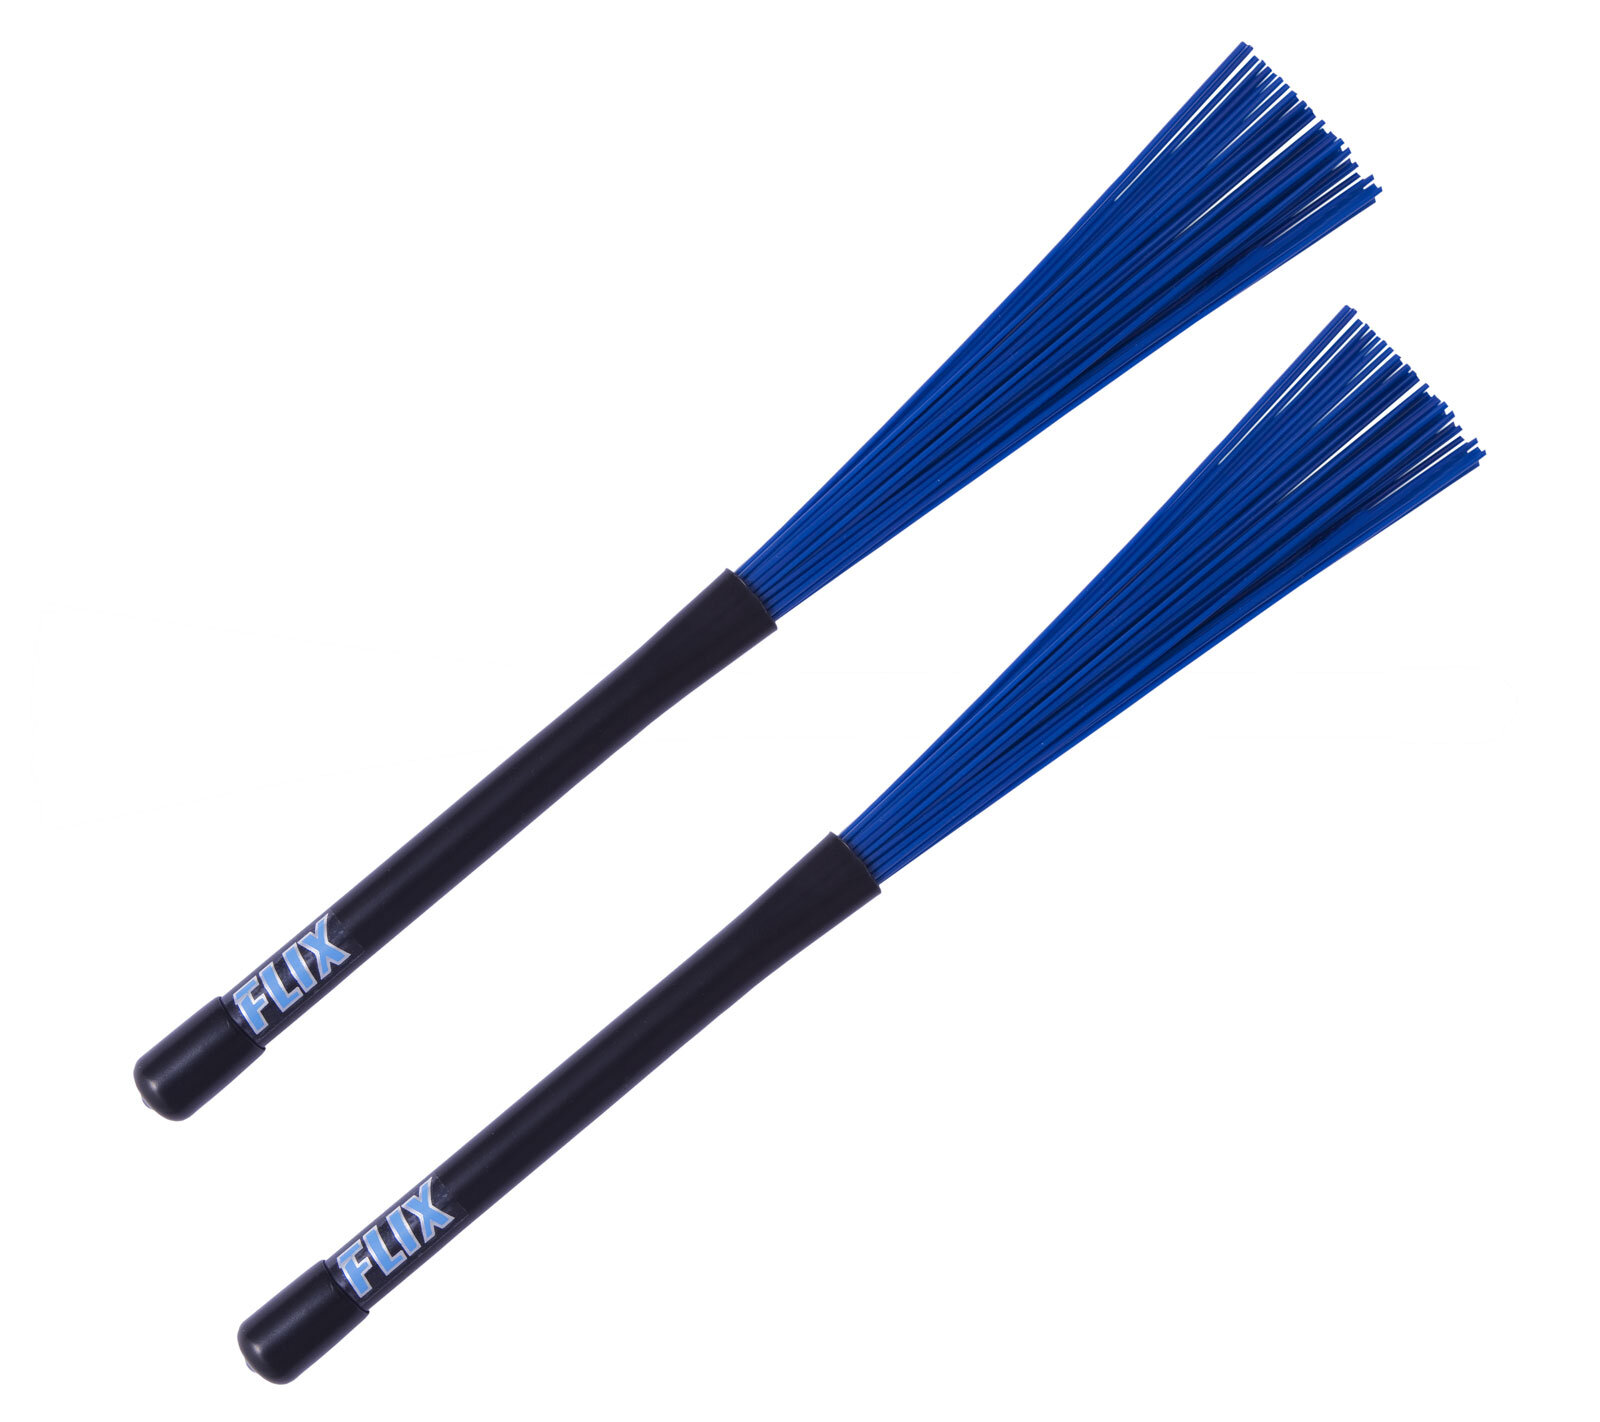 Flix Jazz Fiber blue broom : photo 1